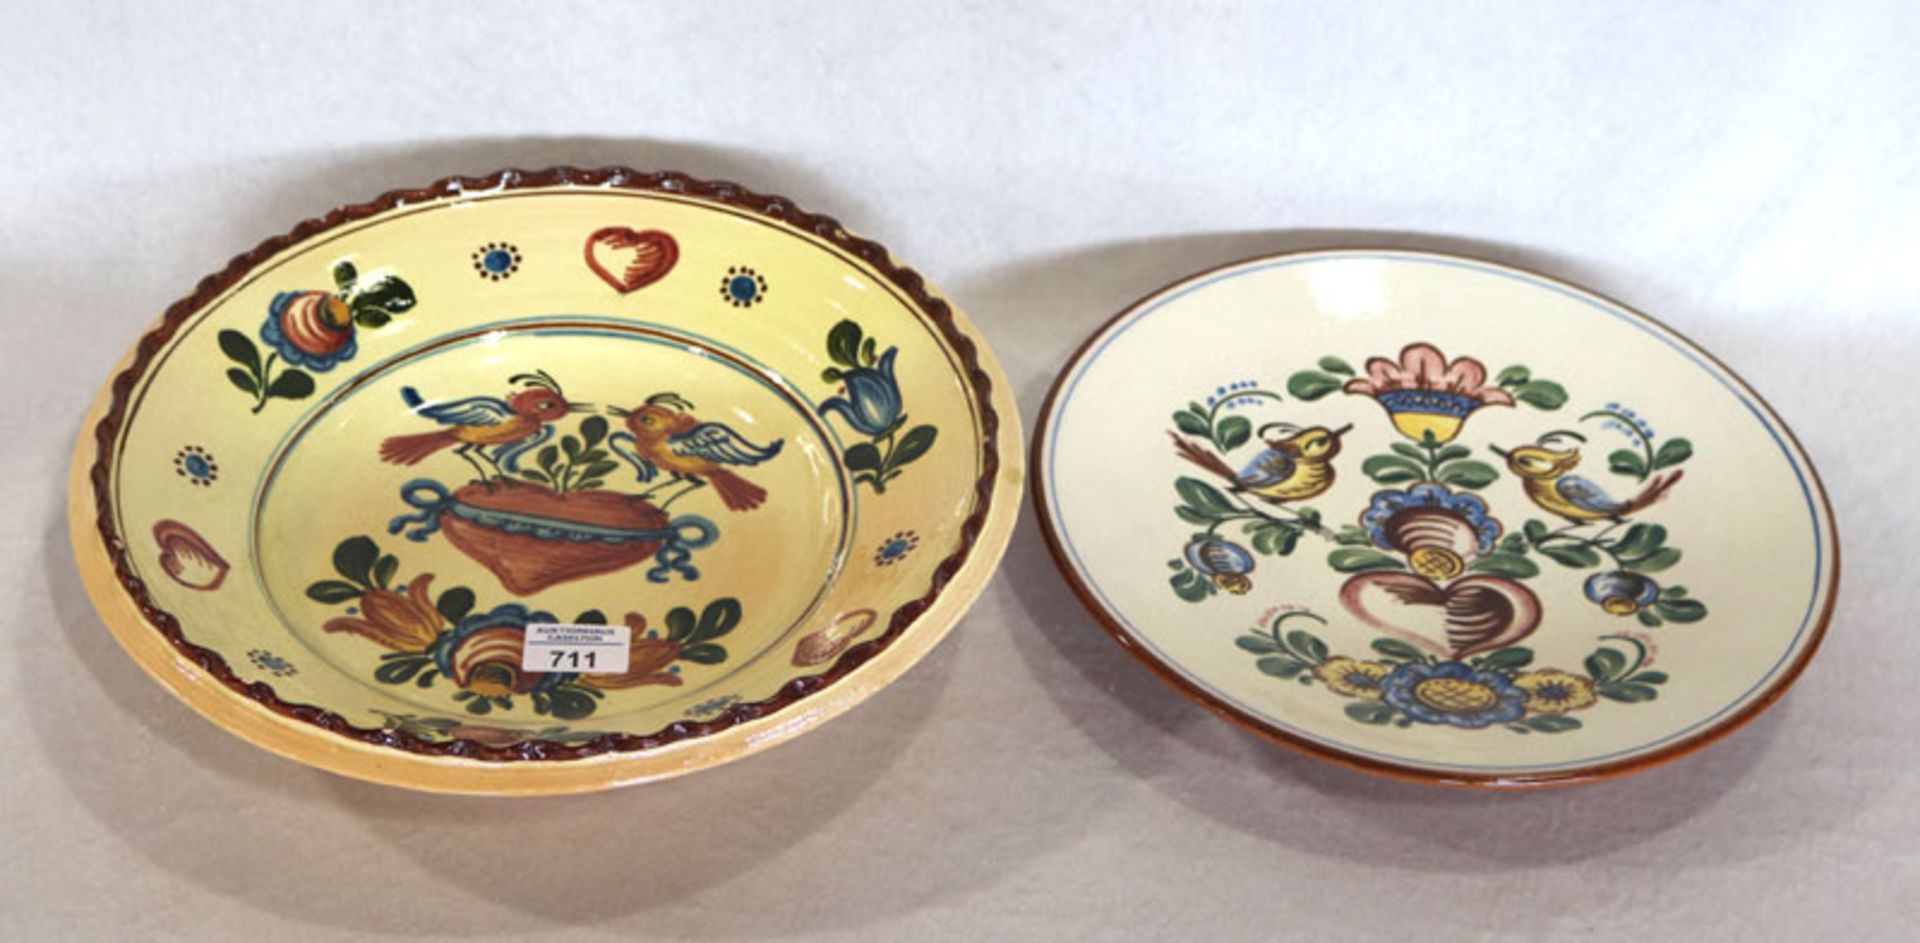 2 Keramik Schalen mit Blumen- und Vogelmalerei, H 8 cm, D 35 cm, bestossen, H 4 cm, D 31 cm,